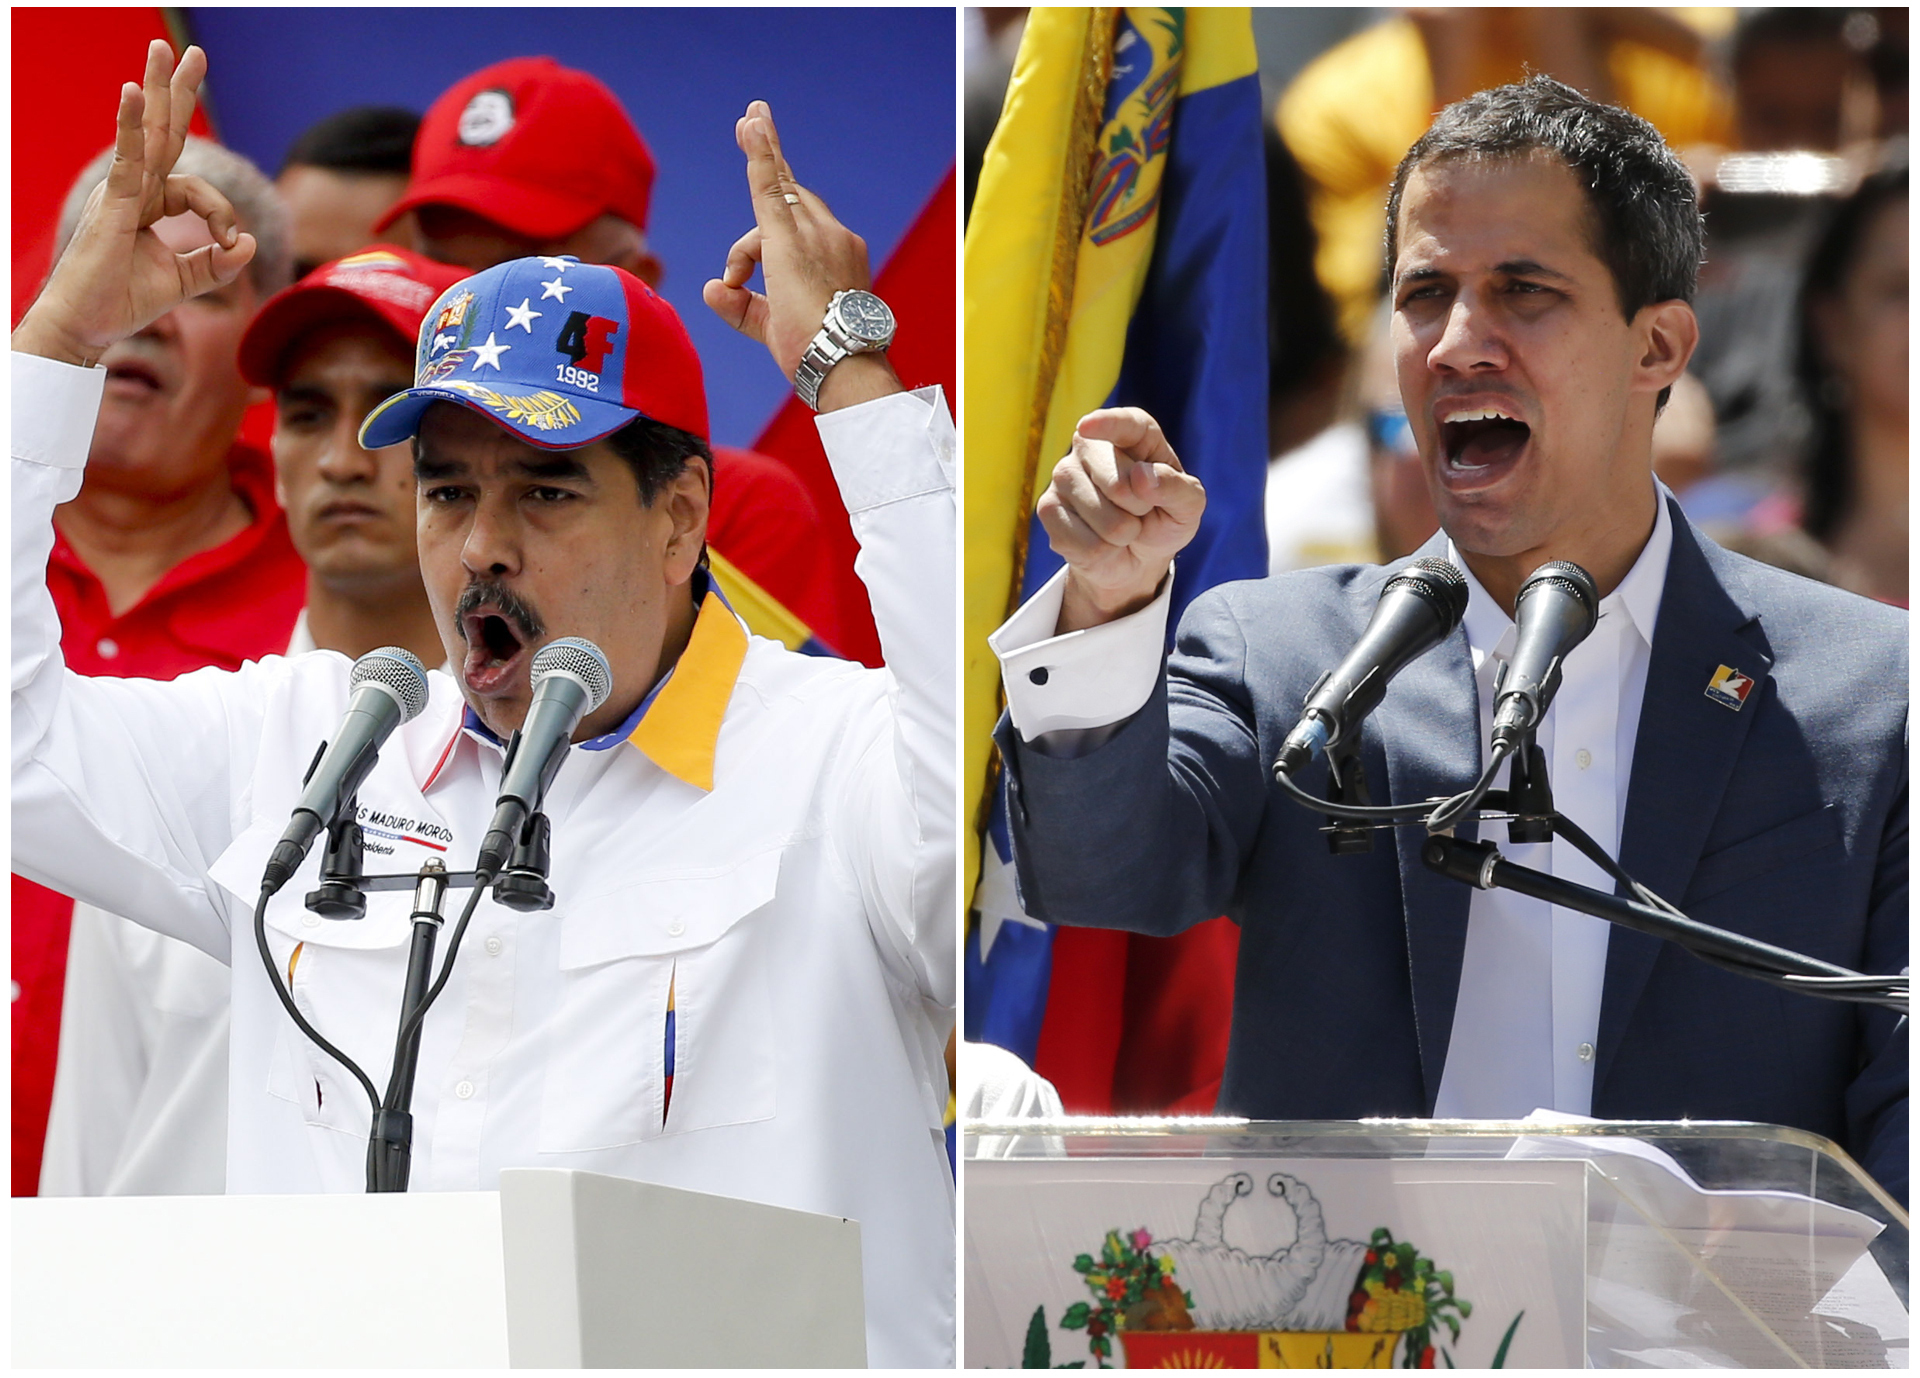 El presidente Nicolás Maduro el 23 de marzo de 2019, dirigiéndose a los partidarios en una manifestación antiimperialista, izquierda, y autoproclamado Presidente Interino del país, Juan Guaidó, hablando a sus partidarios el 12 de febrero de 2019 en una manifestación contra el gobierno de Maduro, ambos en Caracas, Venezuela. 